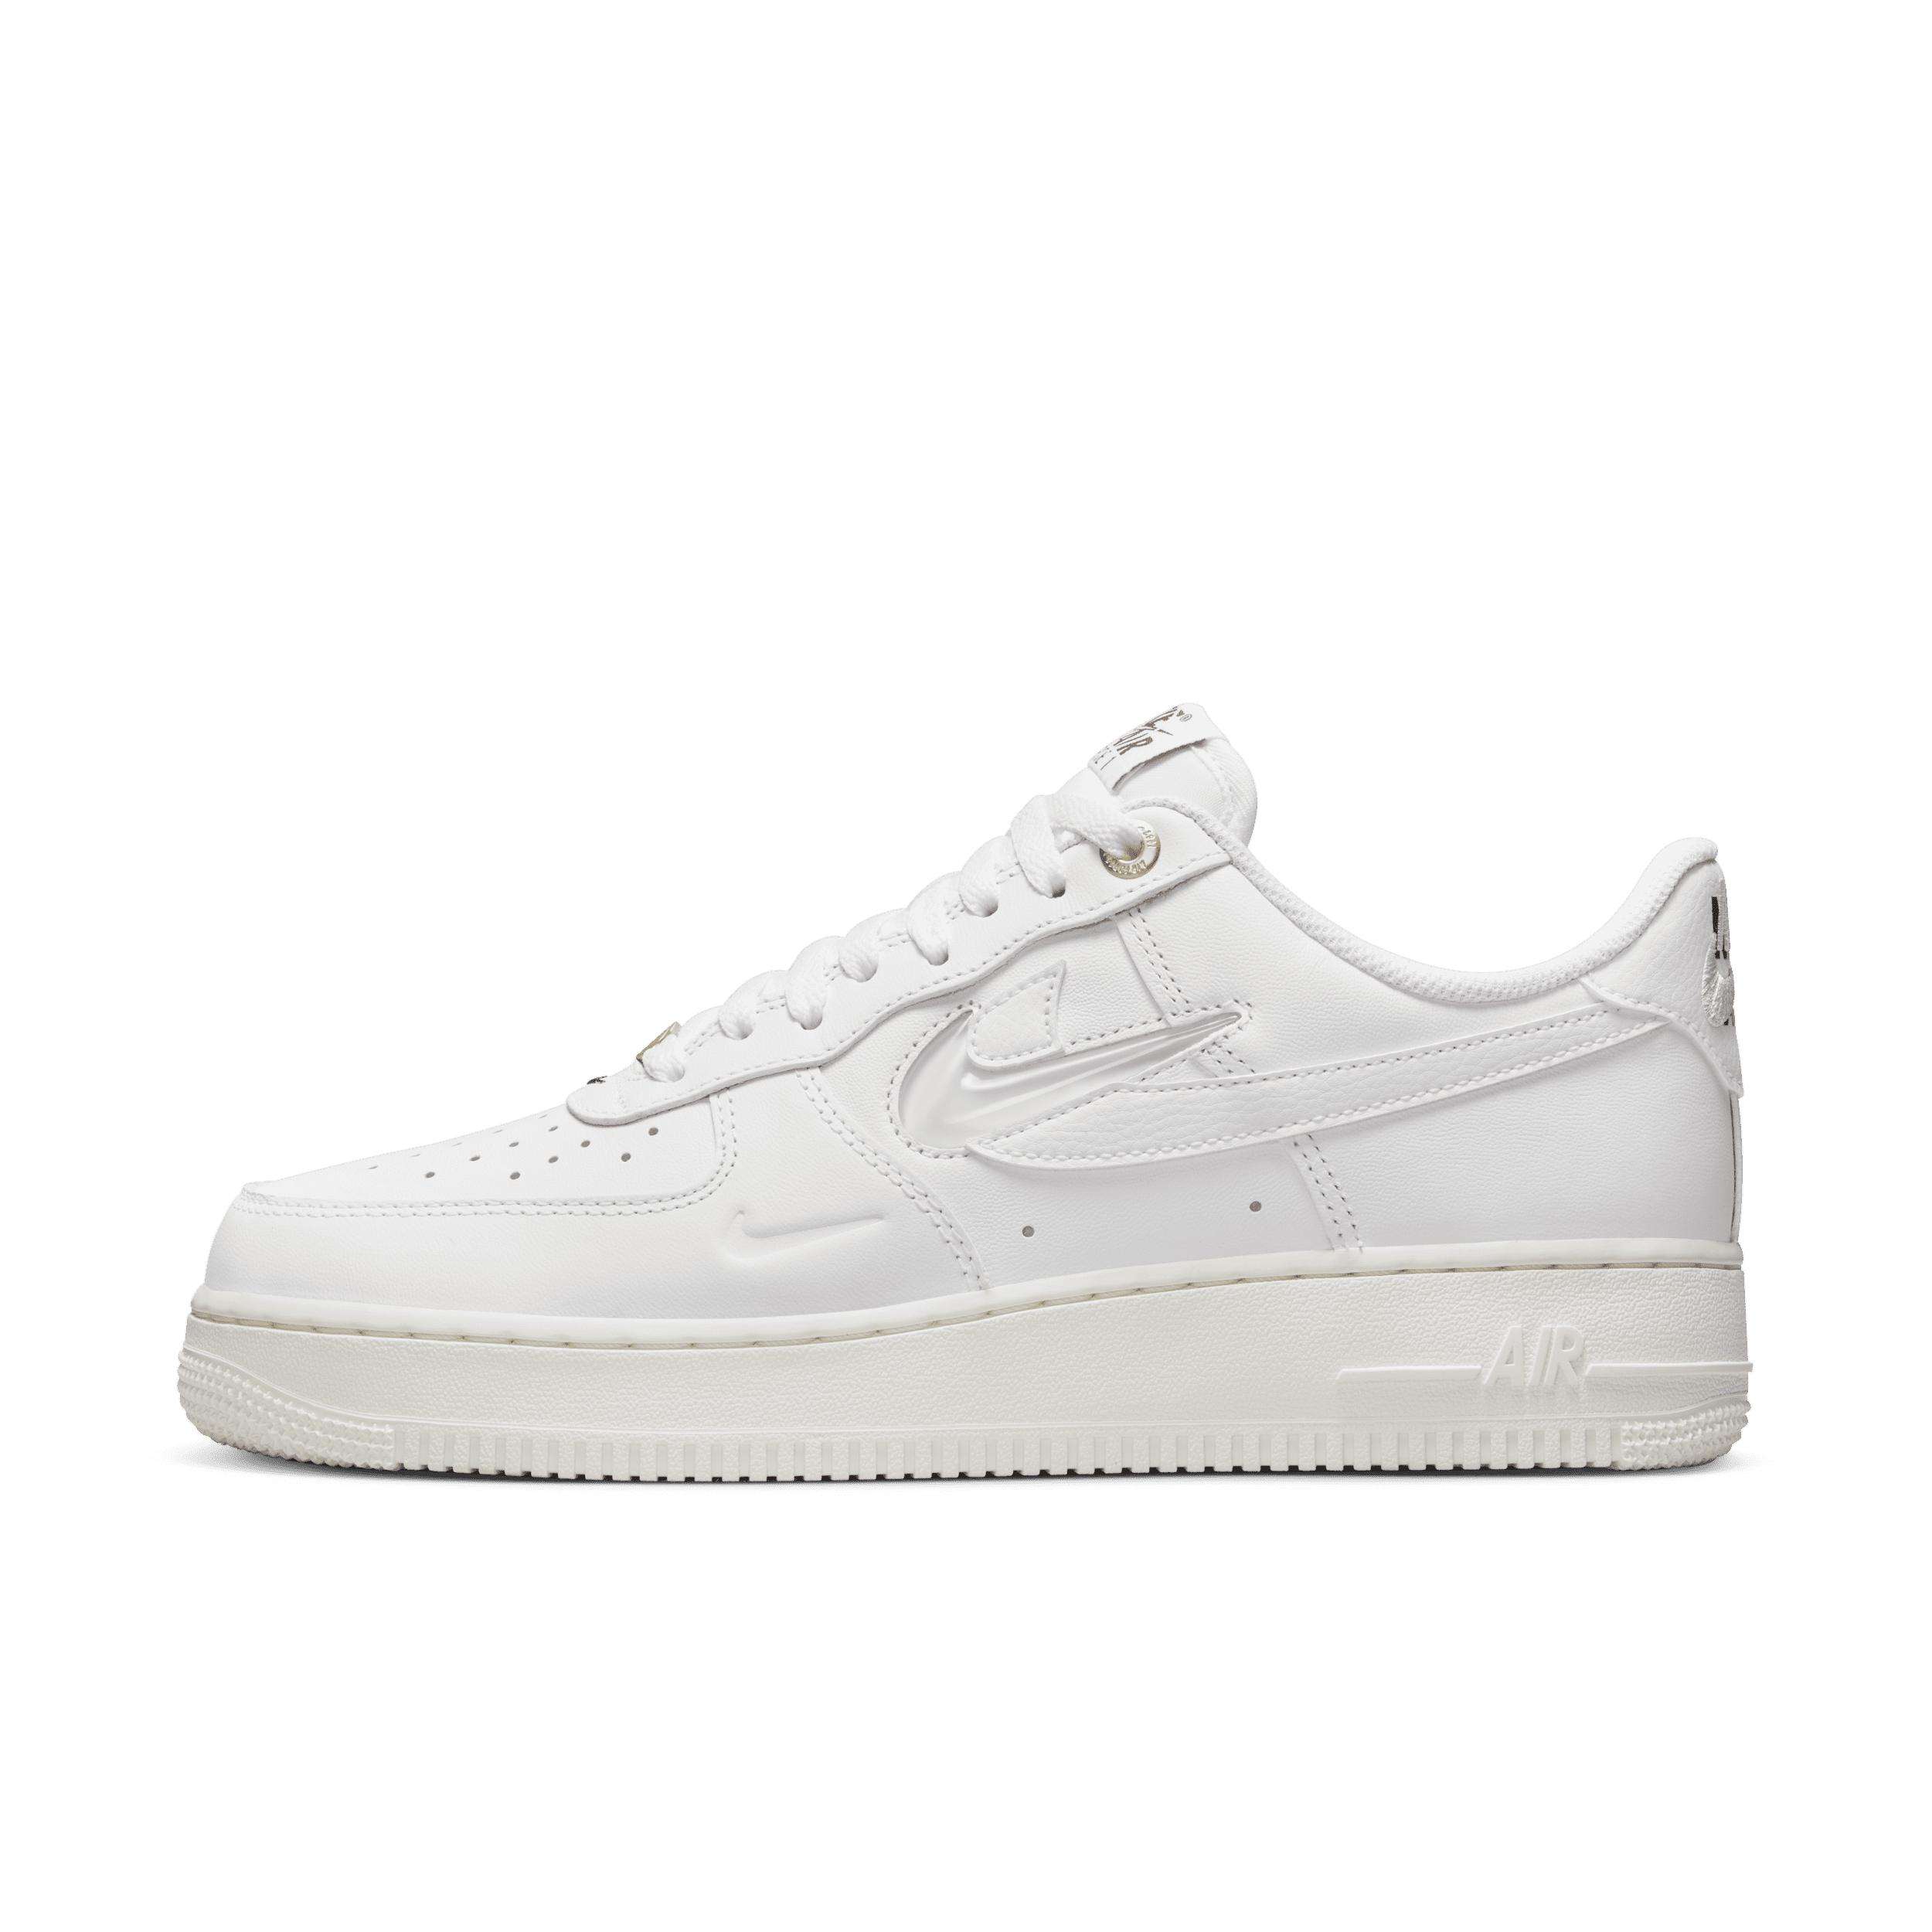 Nike Air Force 1 '07 Premium Herrenschuhe - Weiß